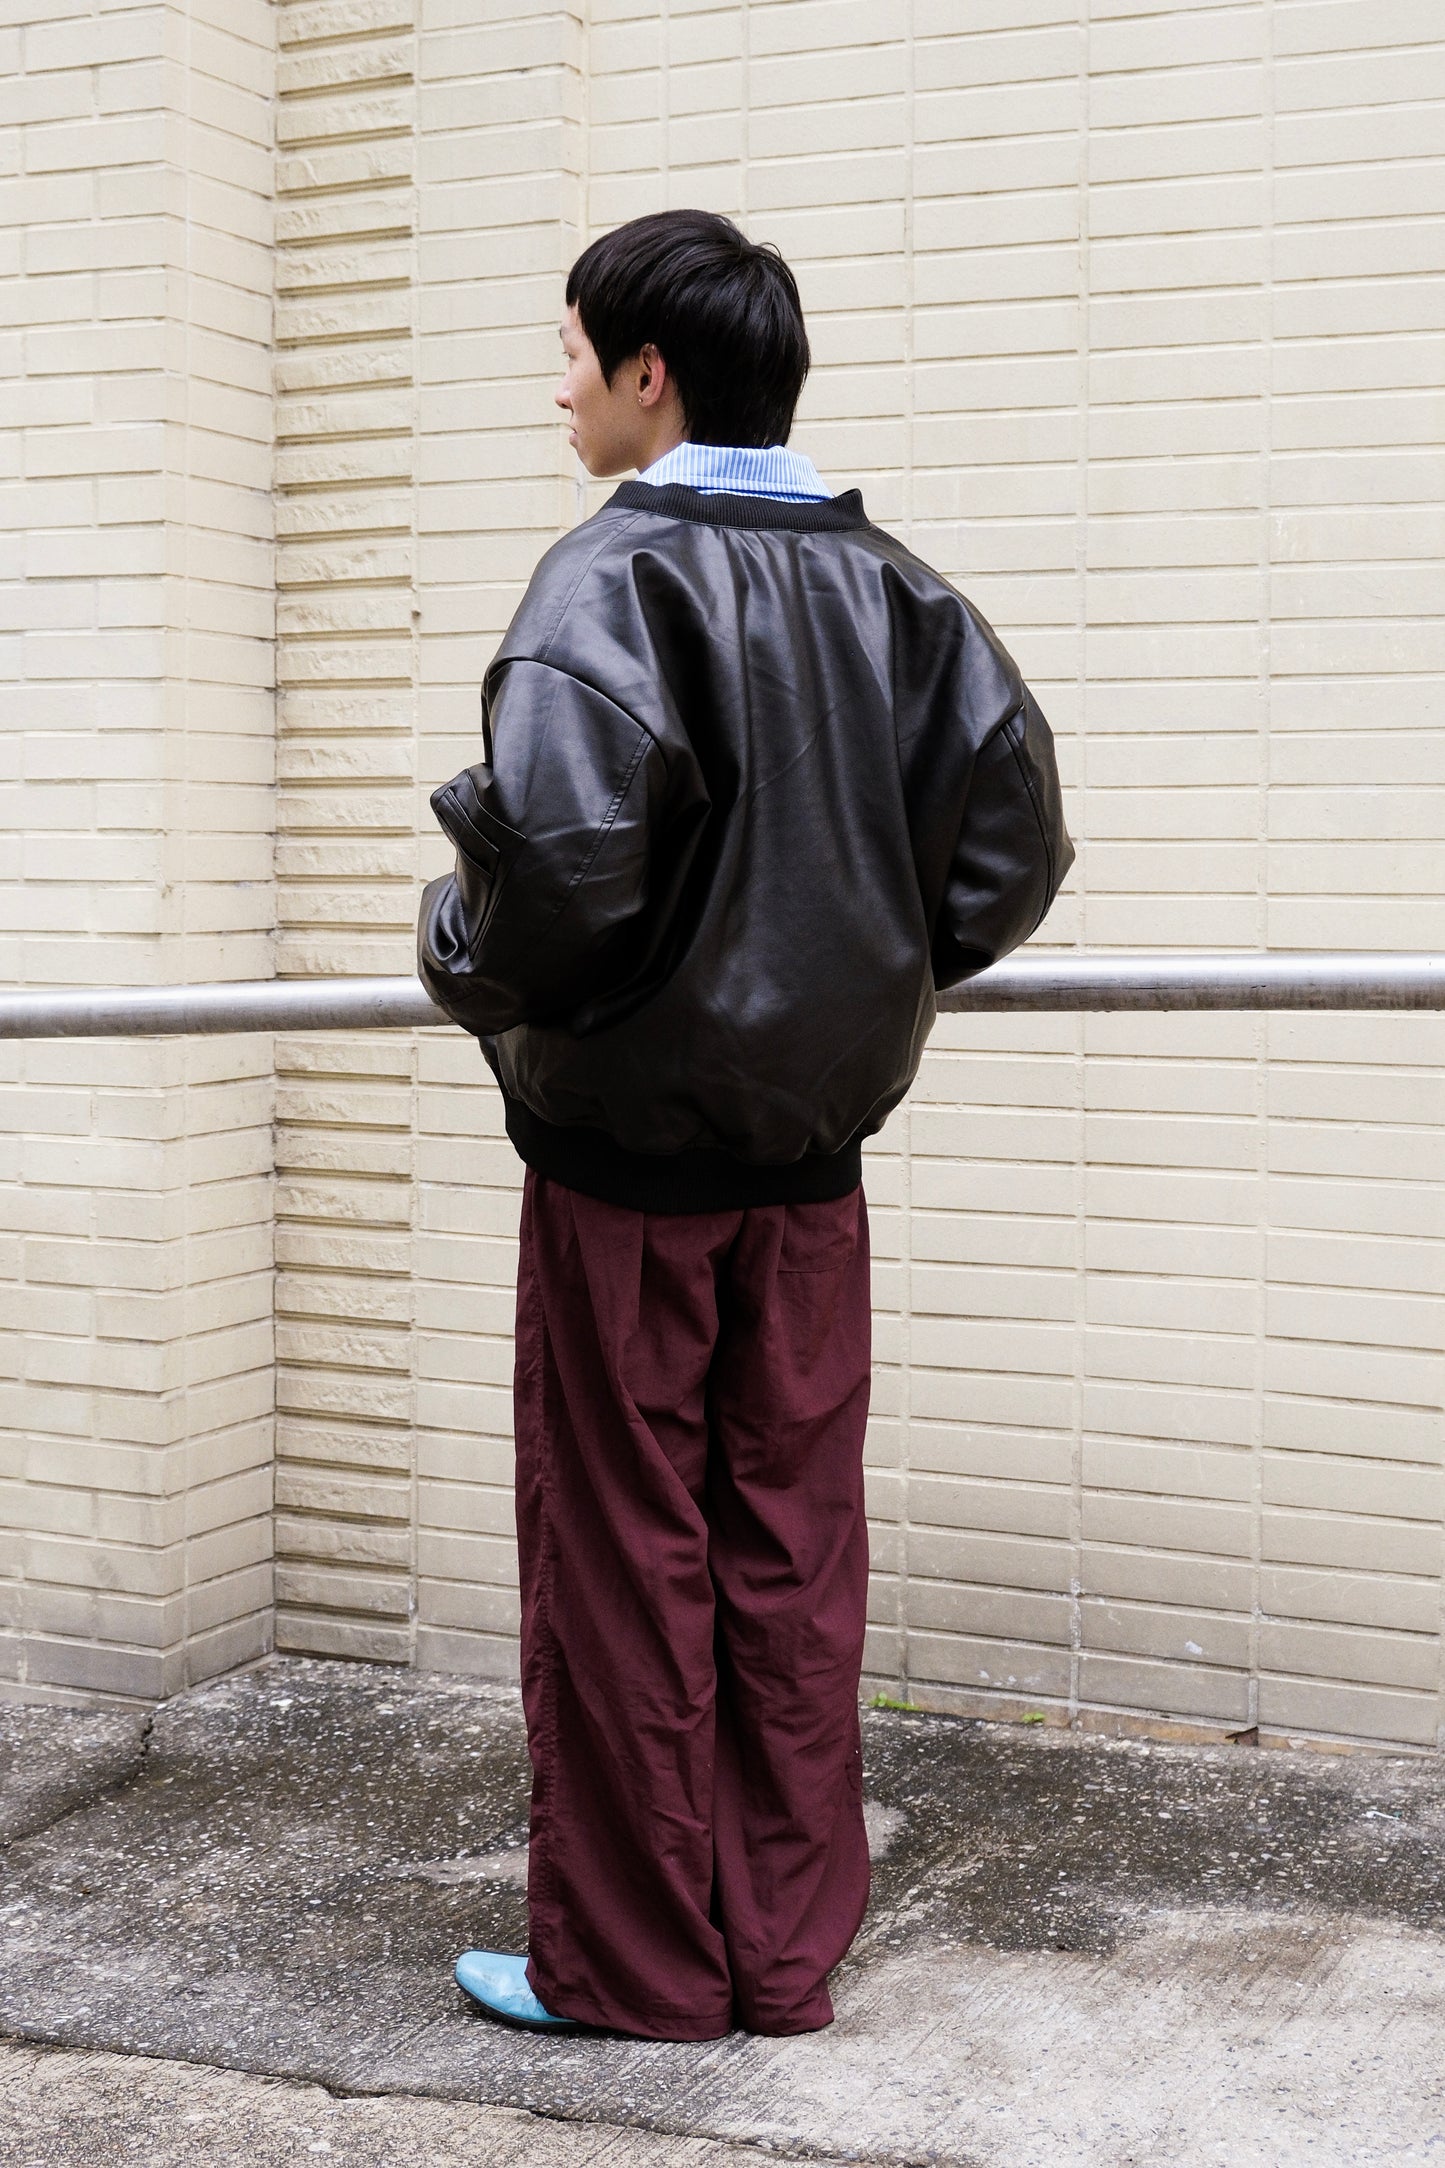 MA-1 leather jacket